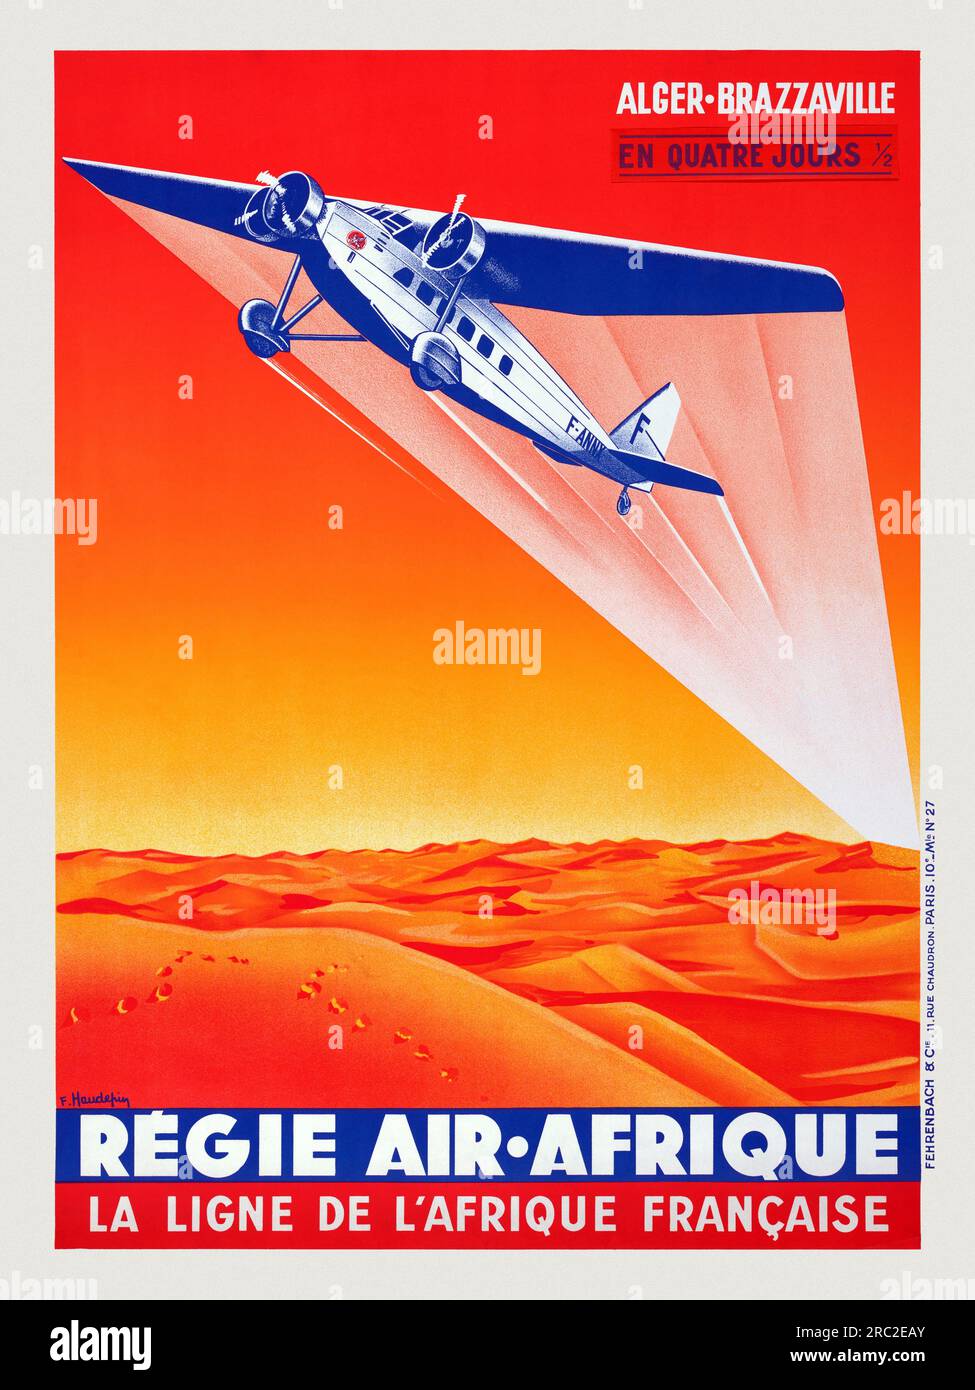 Régie Air Afrique La Ligne de L'Afrique Francaise by F. Haudefiy (dates unknown). Poster published in 1935 in France. Stock Photo